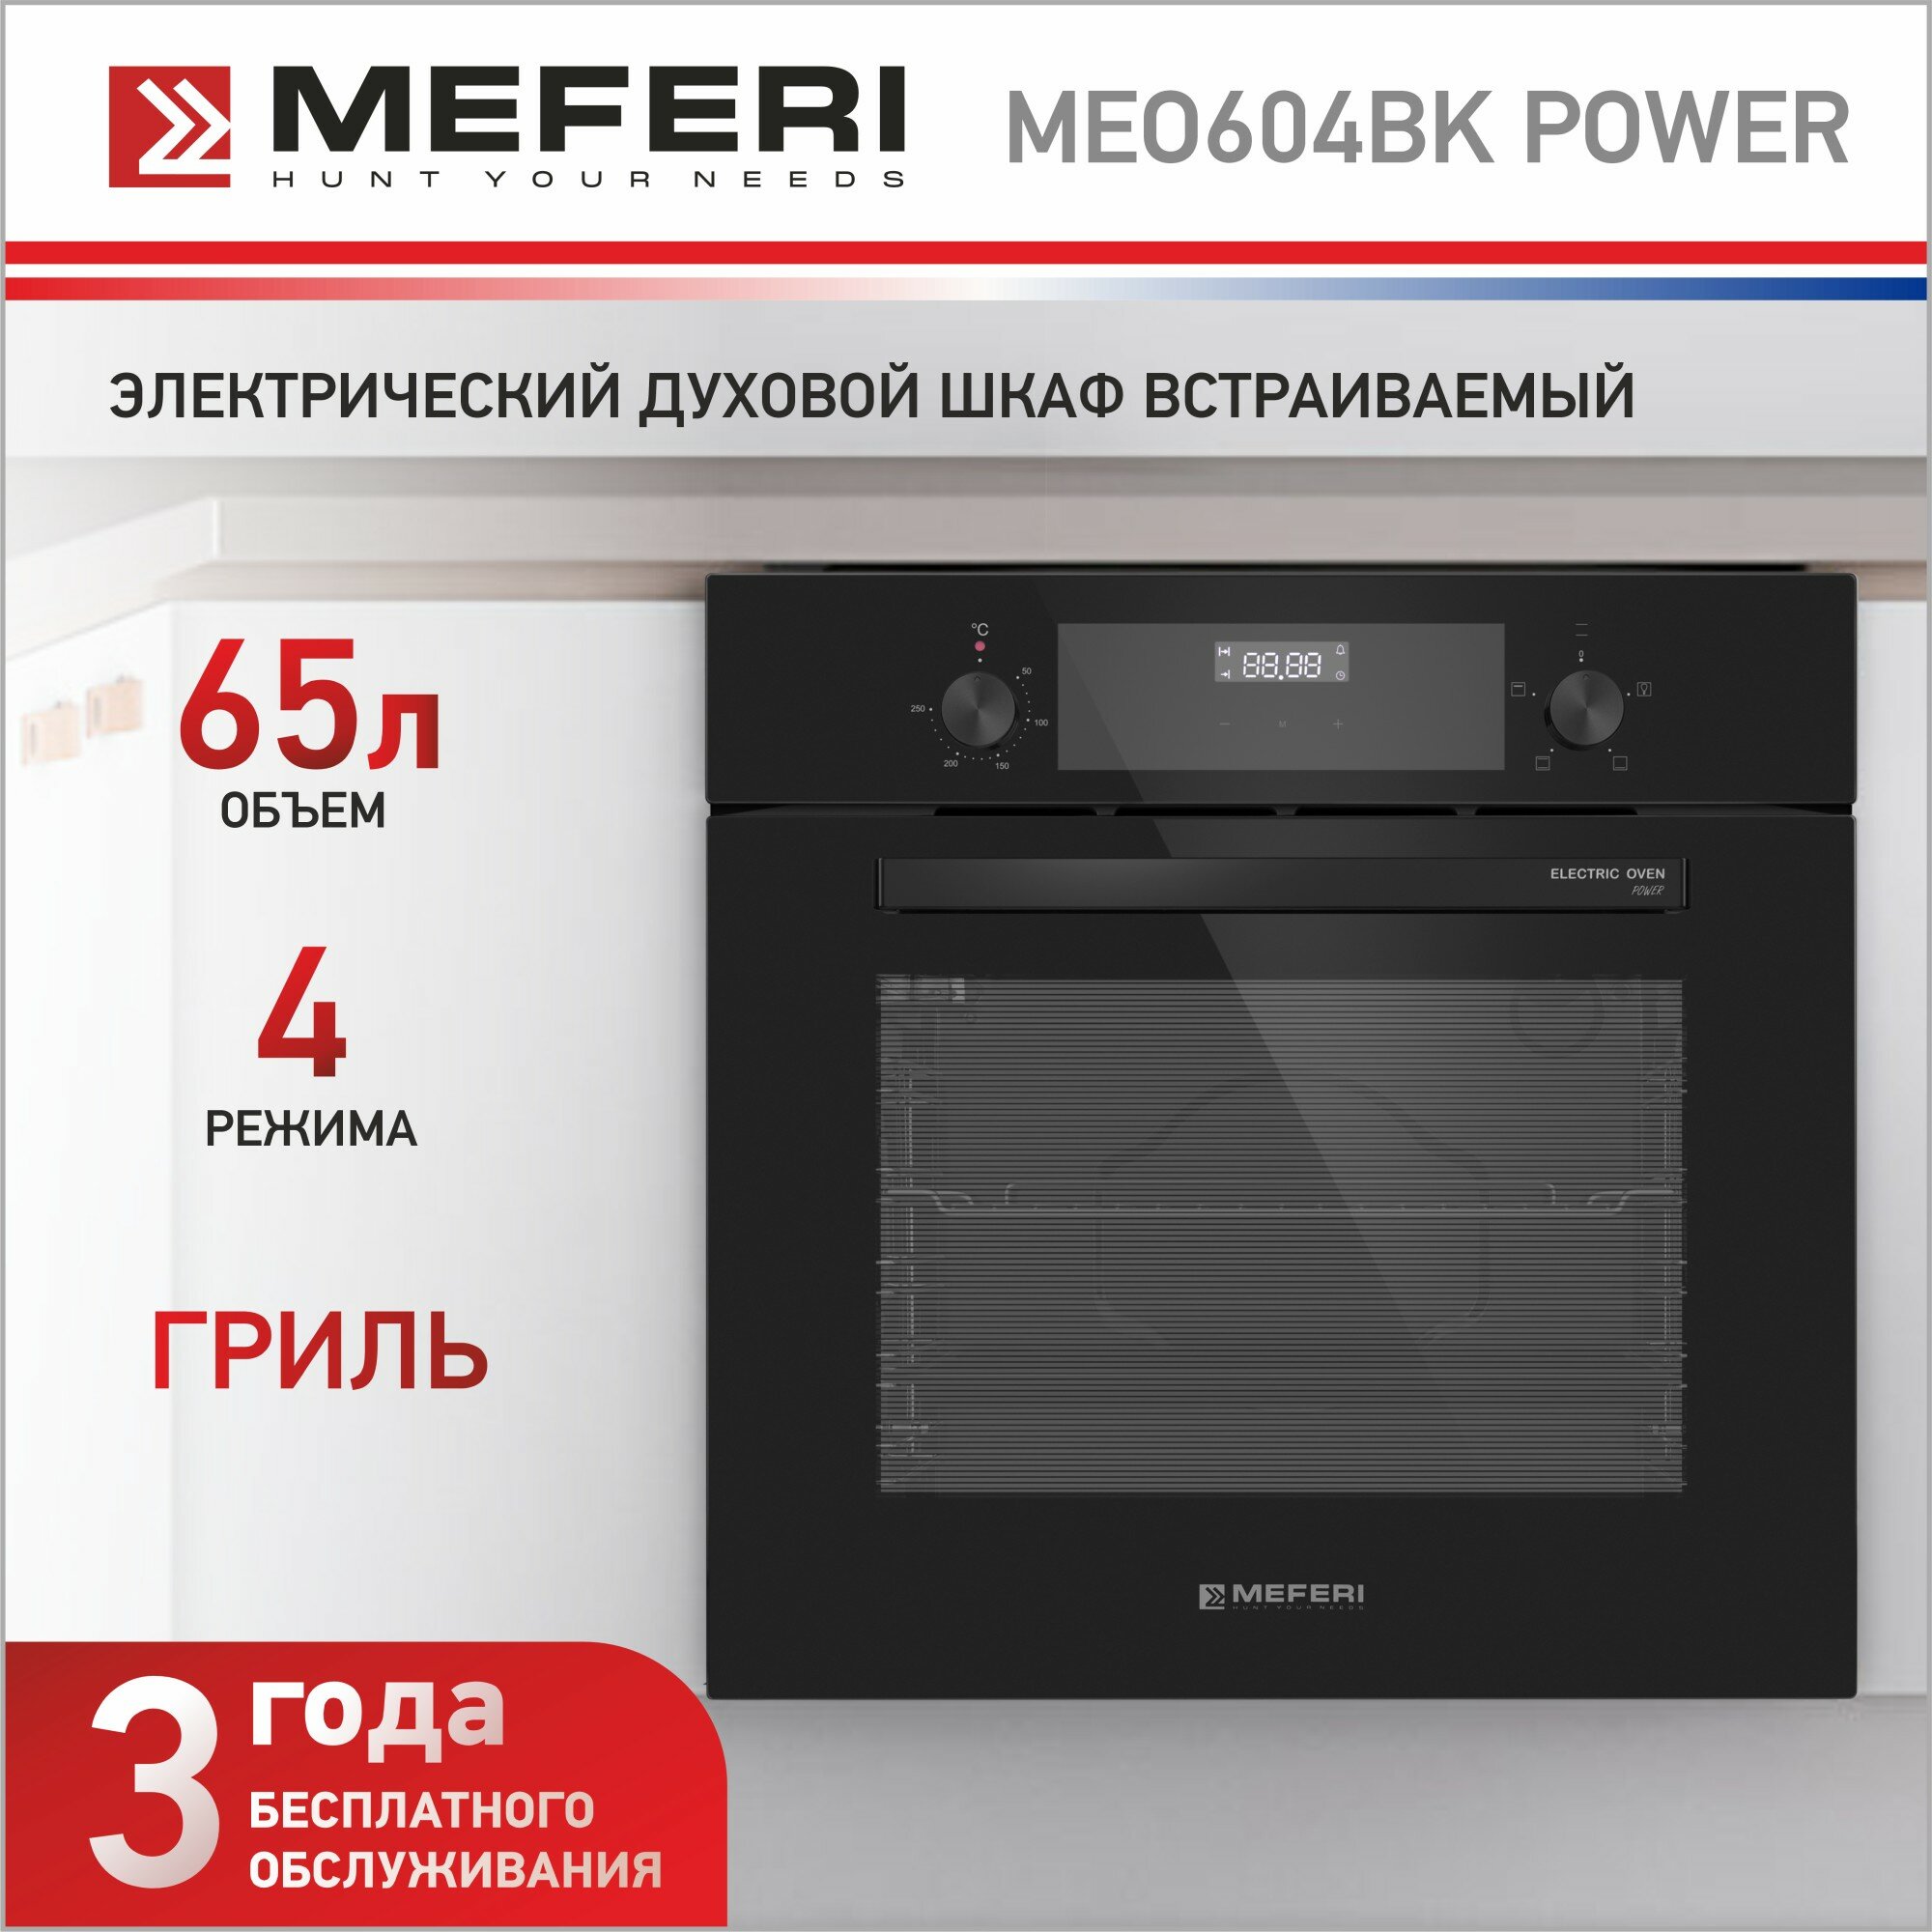 Встраиваемый электрический духовой шкаф MEFERI MEO604BK POWER, с грилем, черный